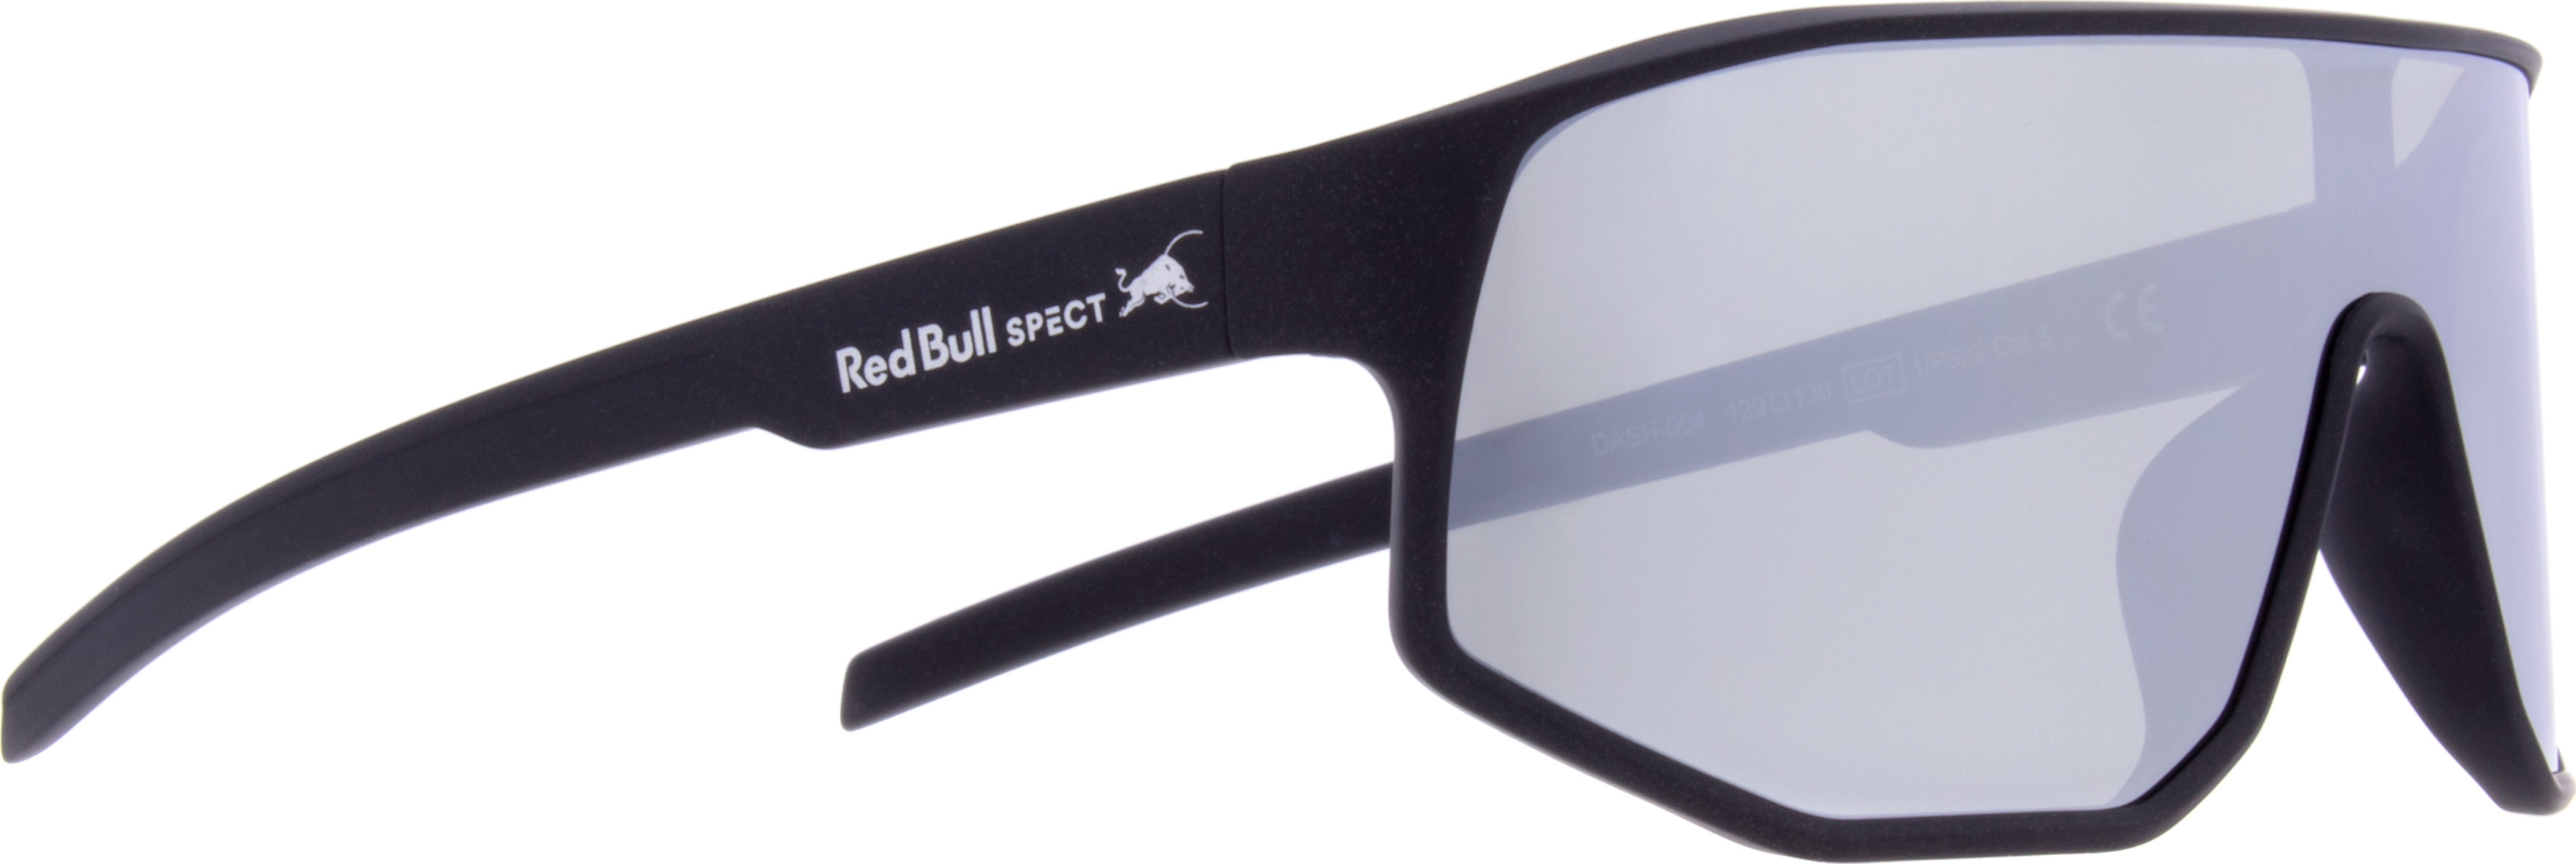 Red Bull SPECT Red Bull SPECT Dash Black OneSize, Black/Brown/Green Revo